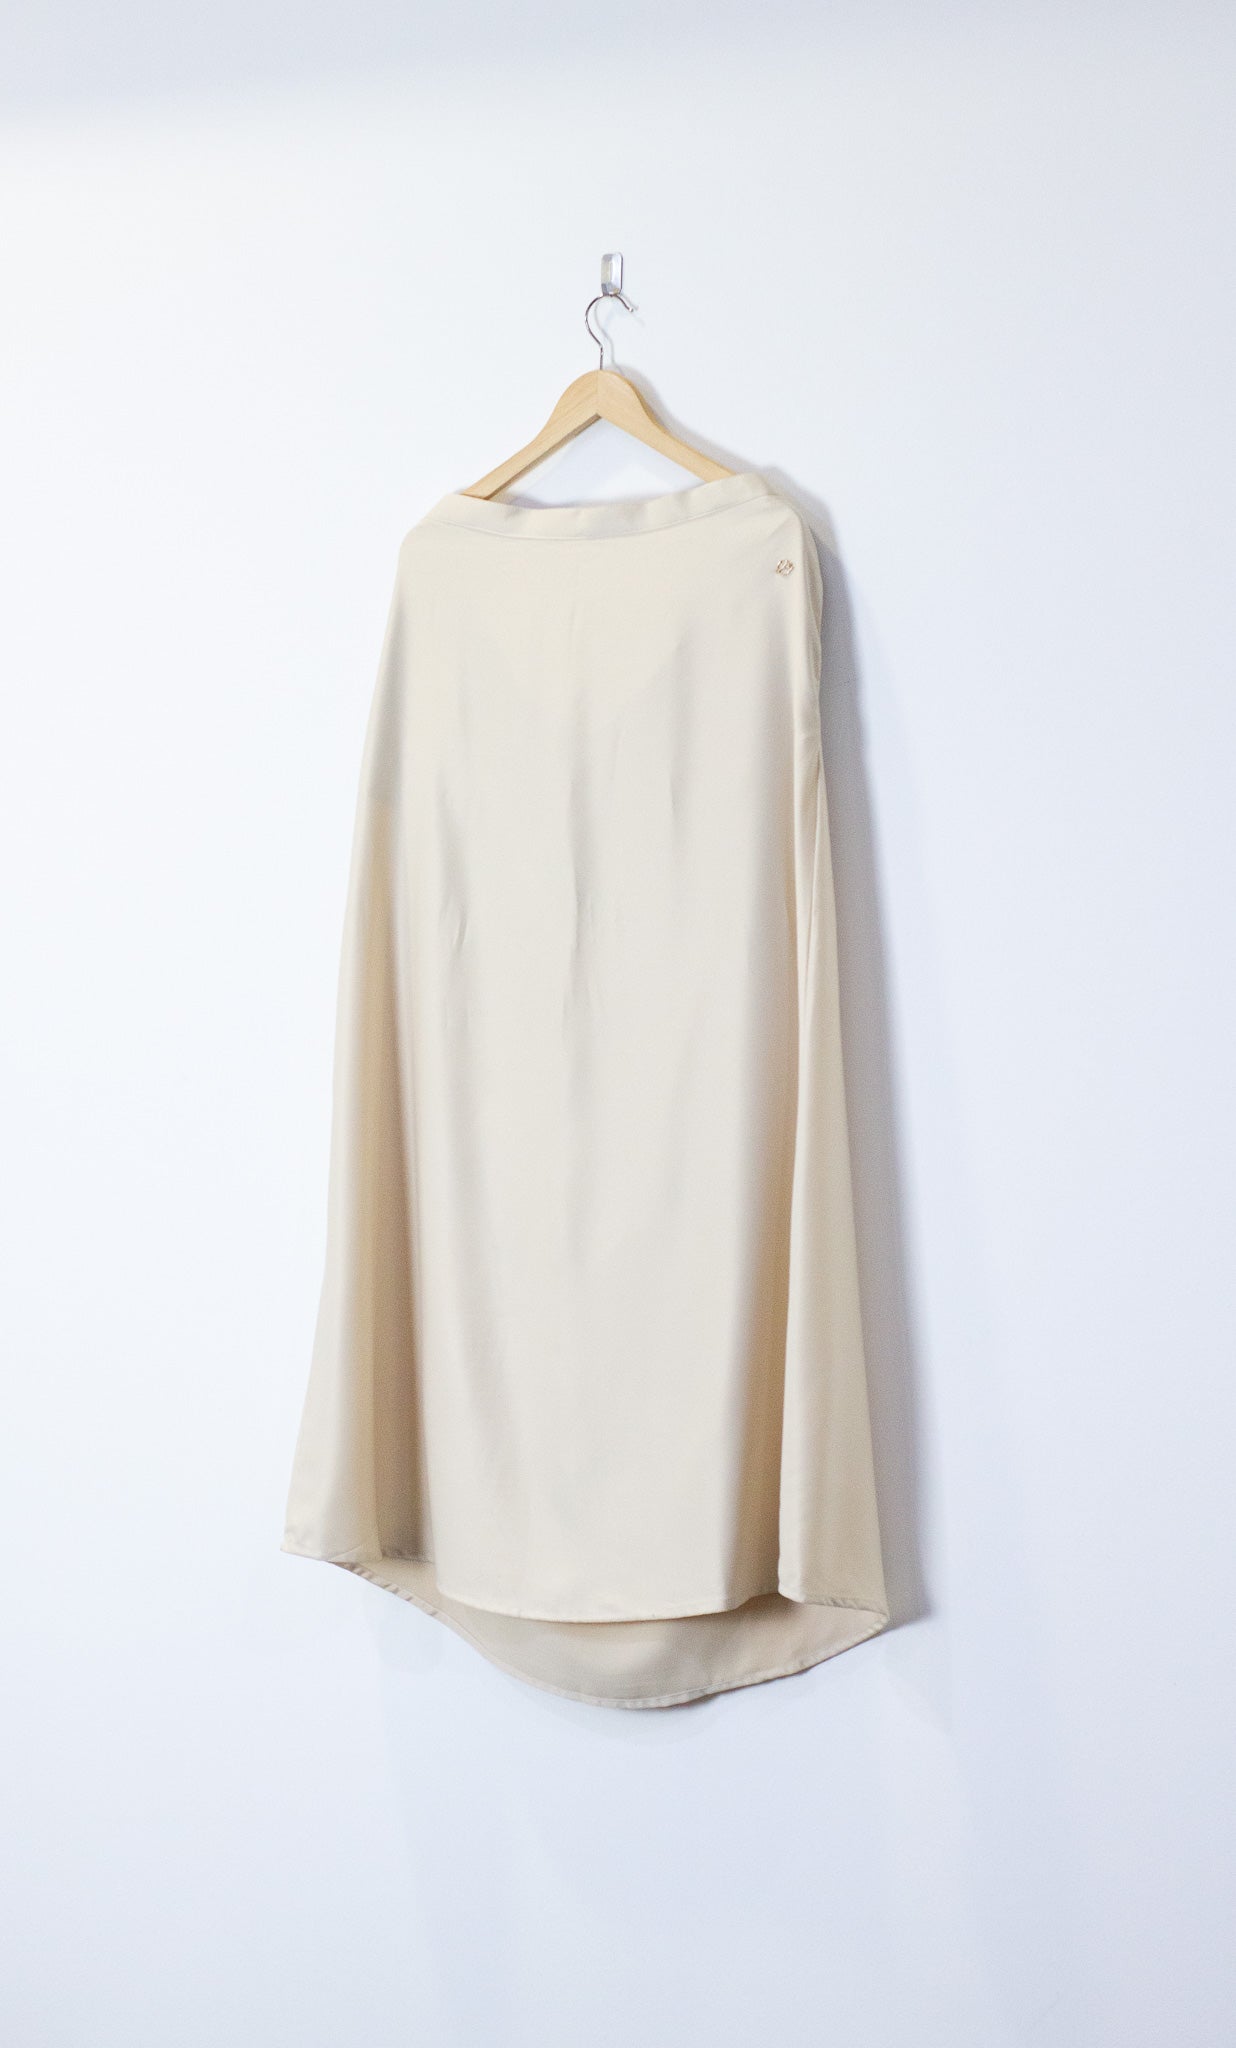 Baju Kurung Skirt in Sandy White